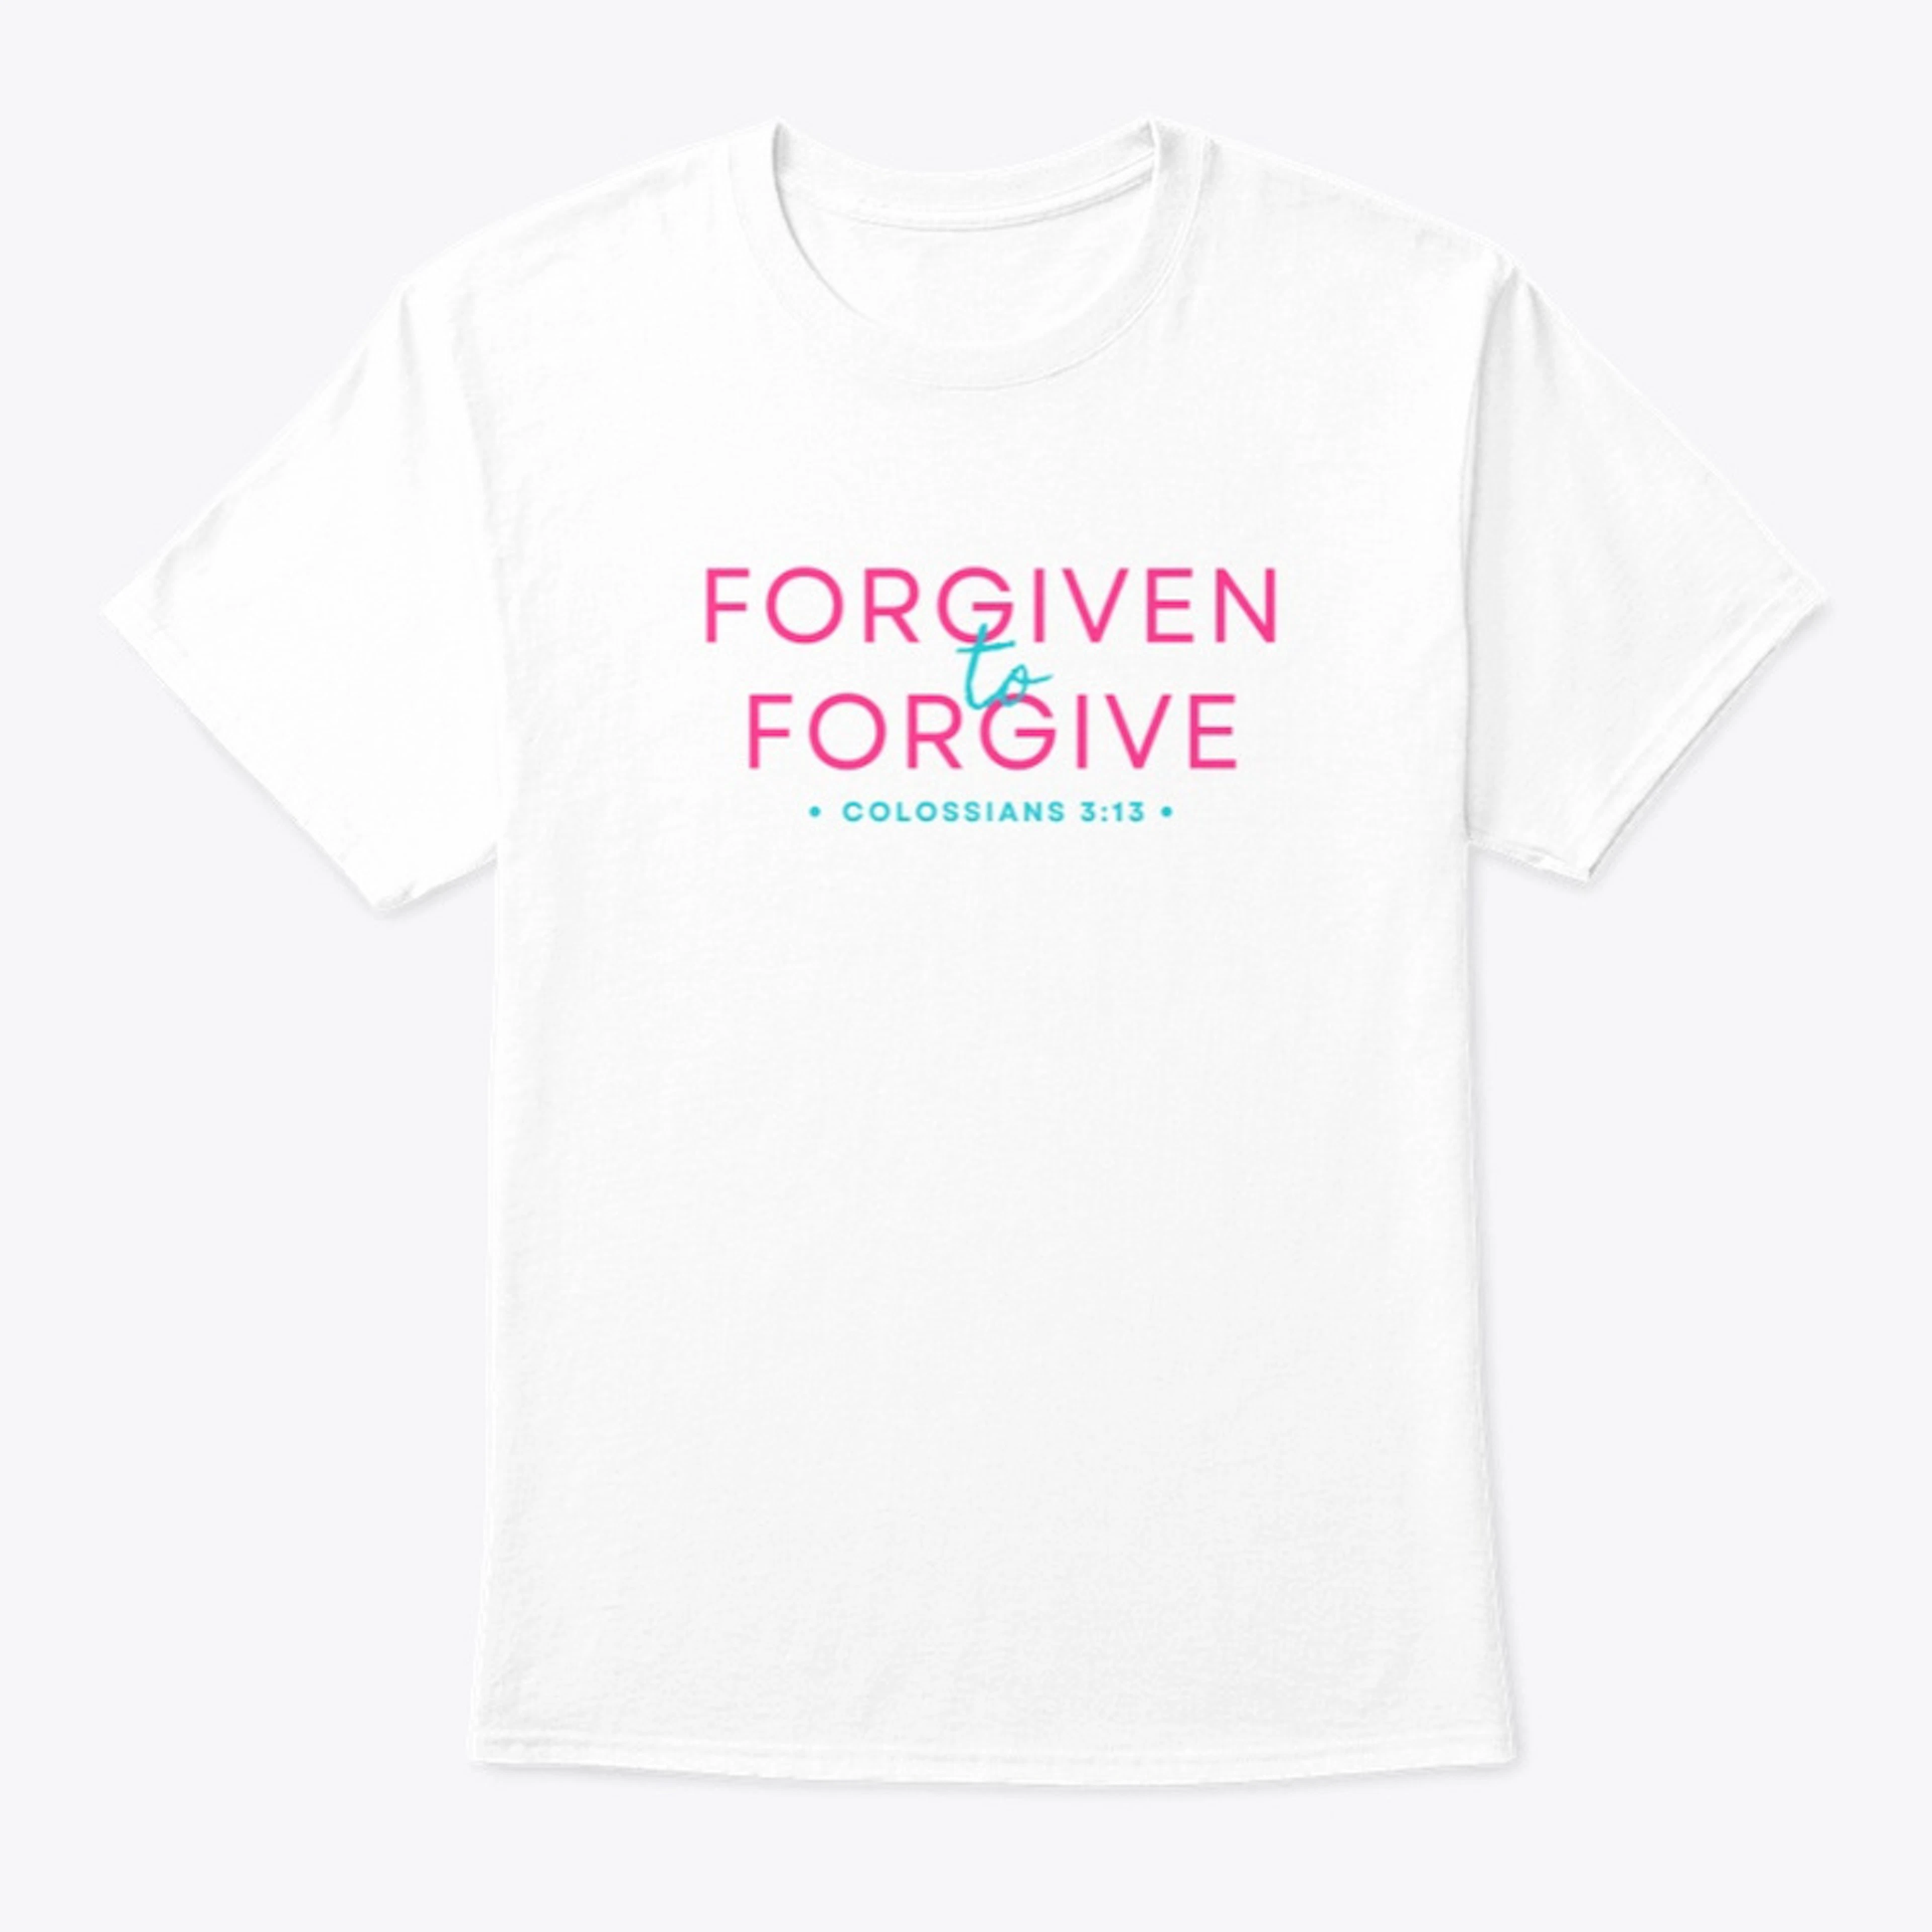 Forgiven to Forgive Colossians 3:13